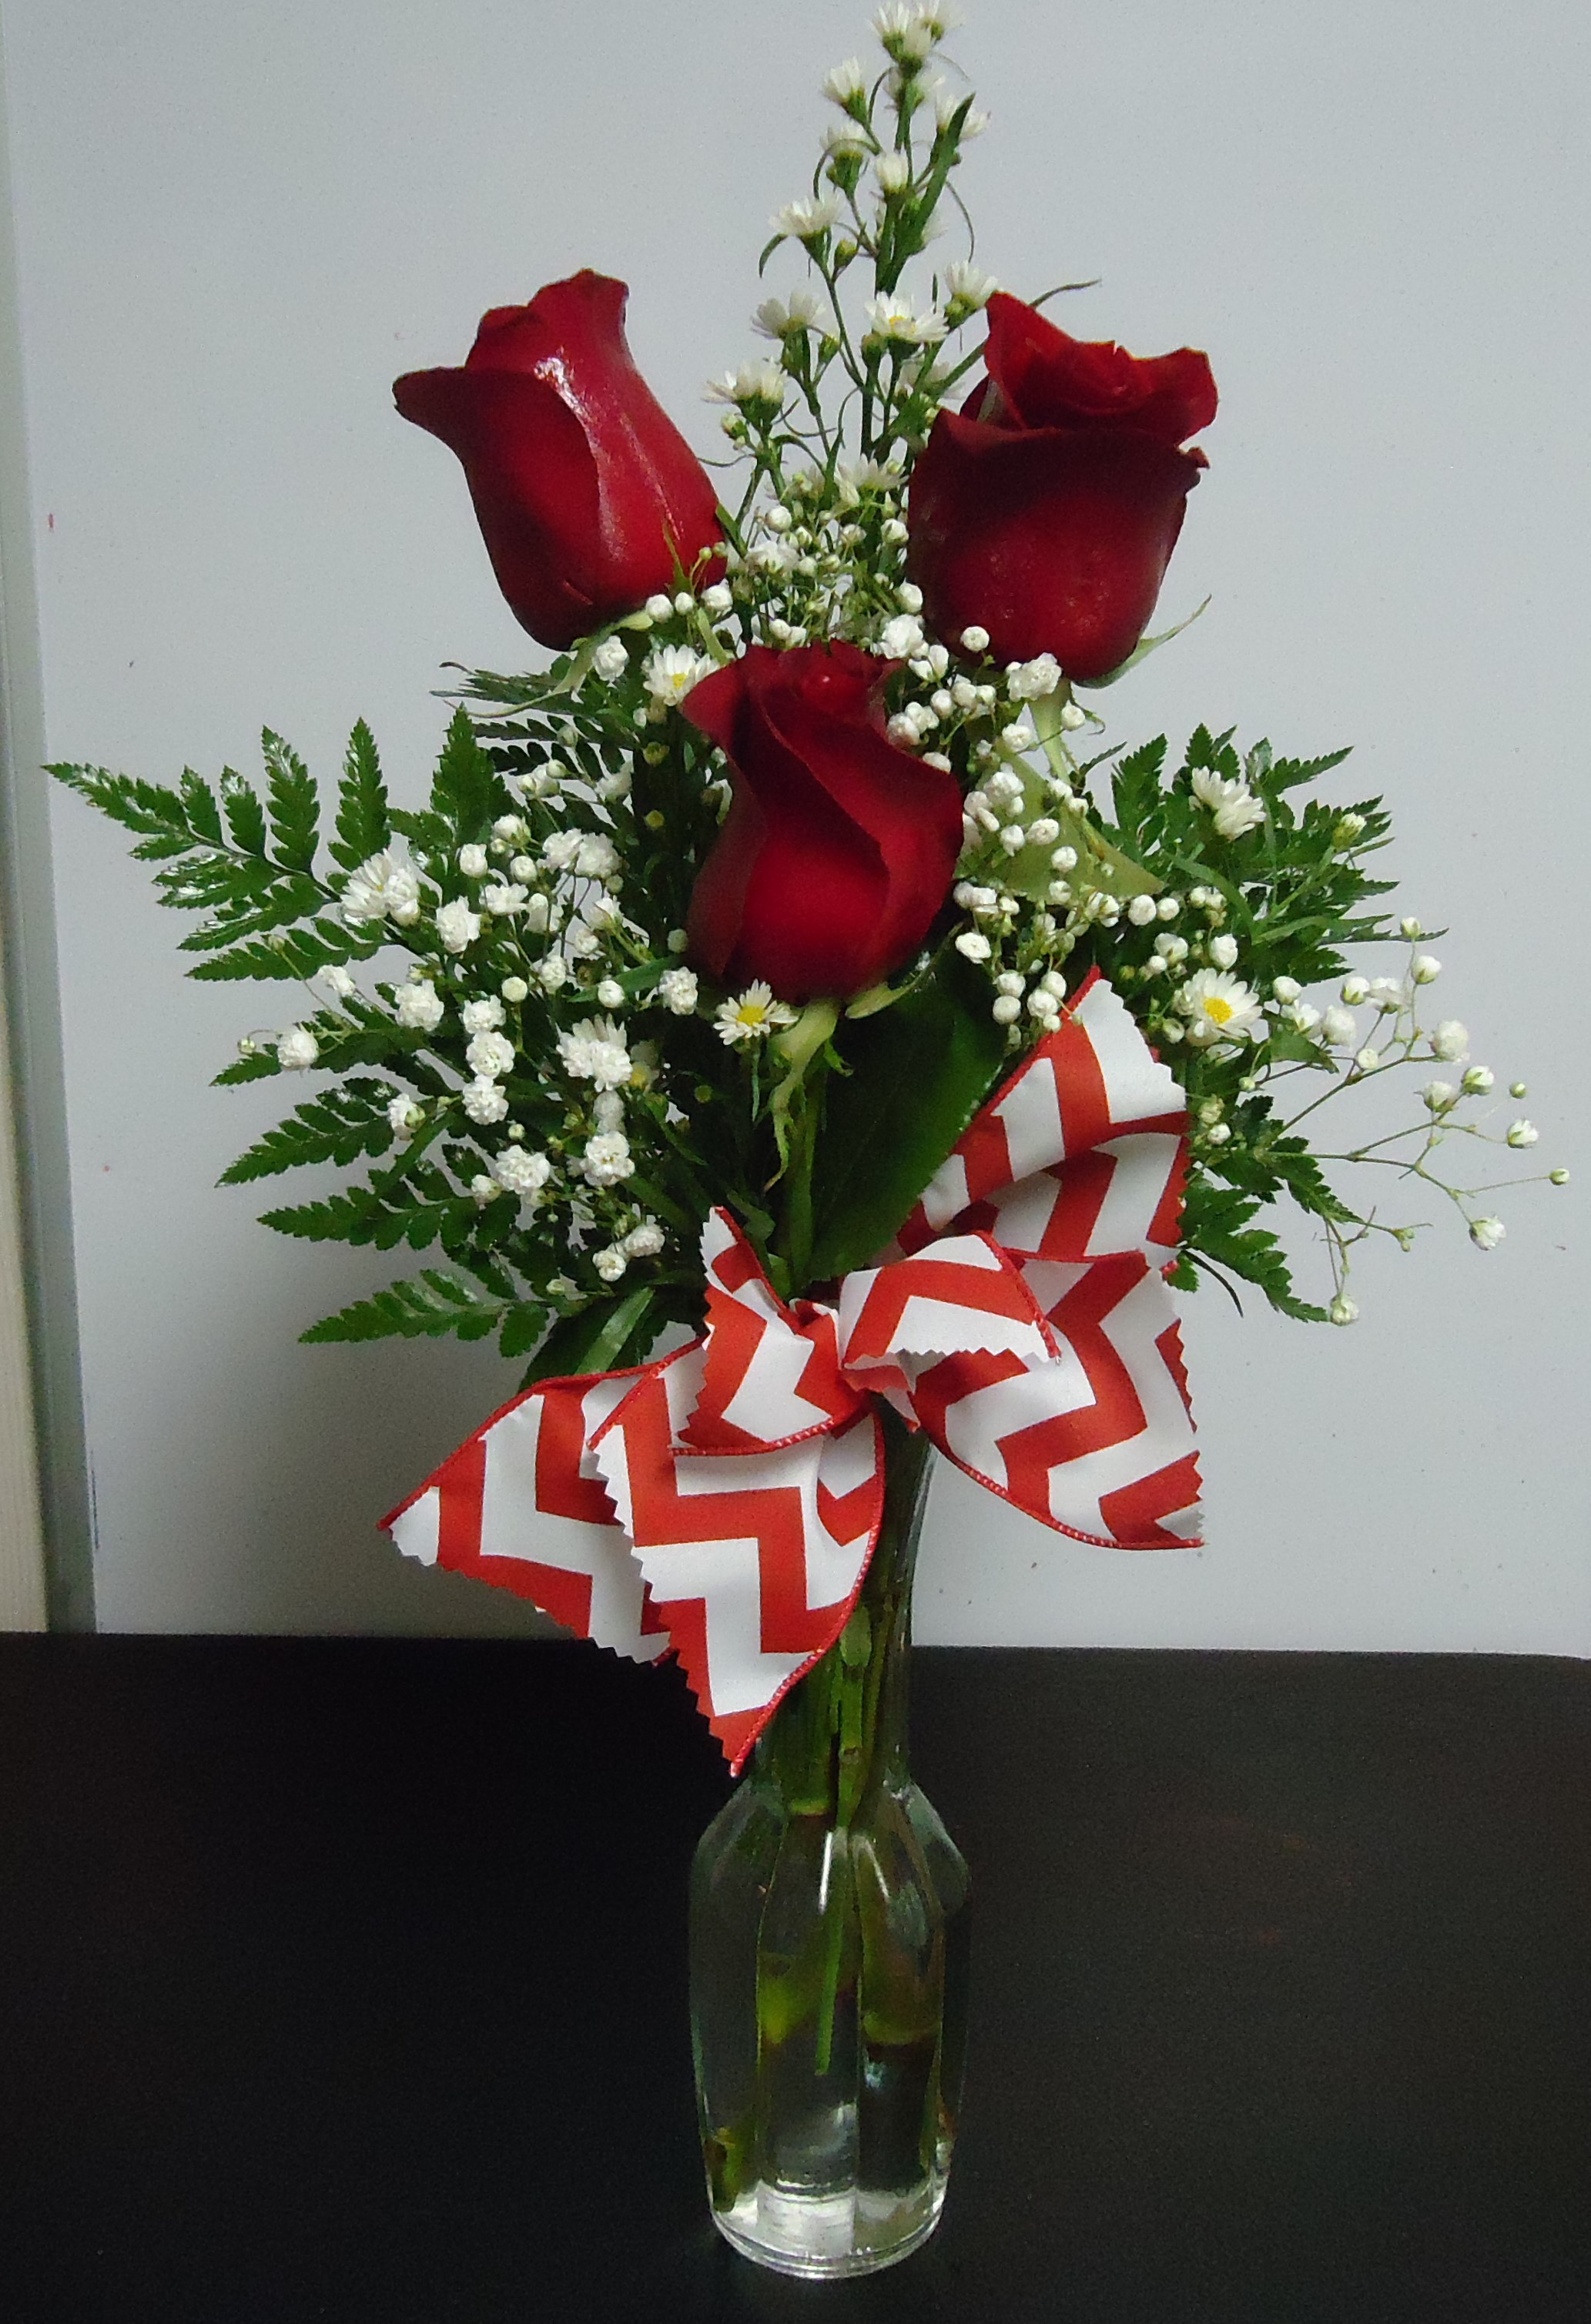 (4) "Three" Rose Vase
$32.50